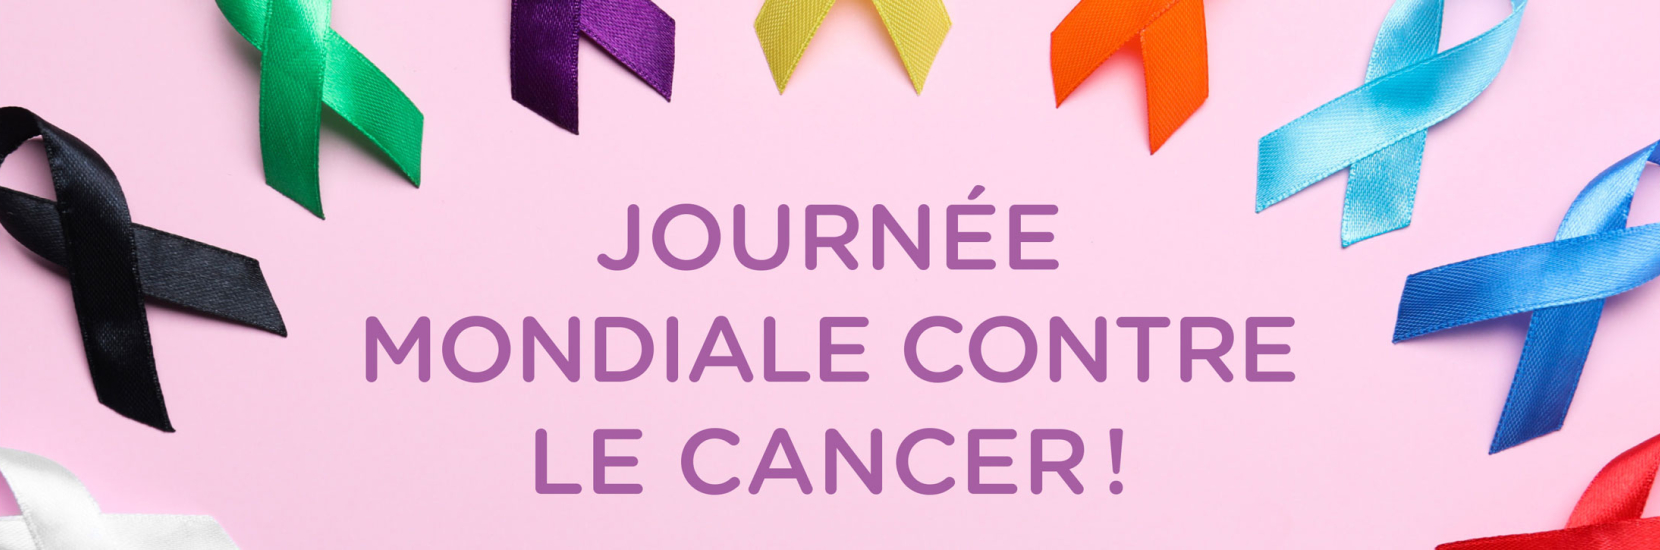 Journée Mondiale contre le Cancer : Stand de sensibilisation et conférence thématique 